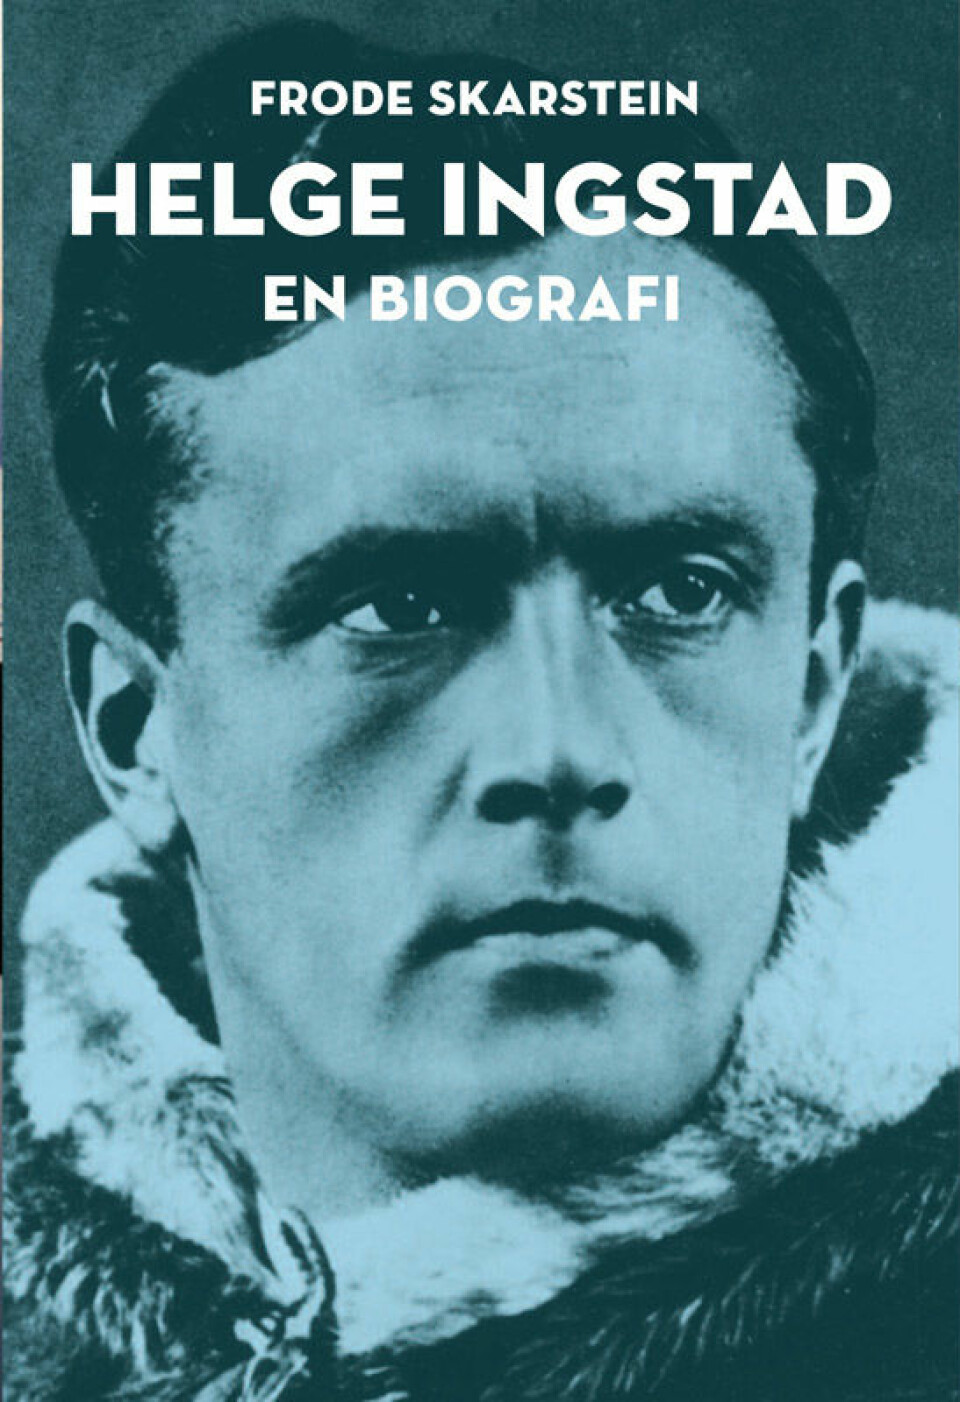 Helge Ingstad: En biografi av Frode Skarstein, utgitt på Spartacus Forlag.